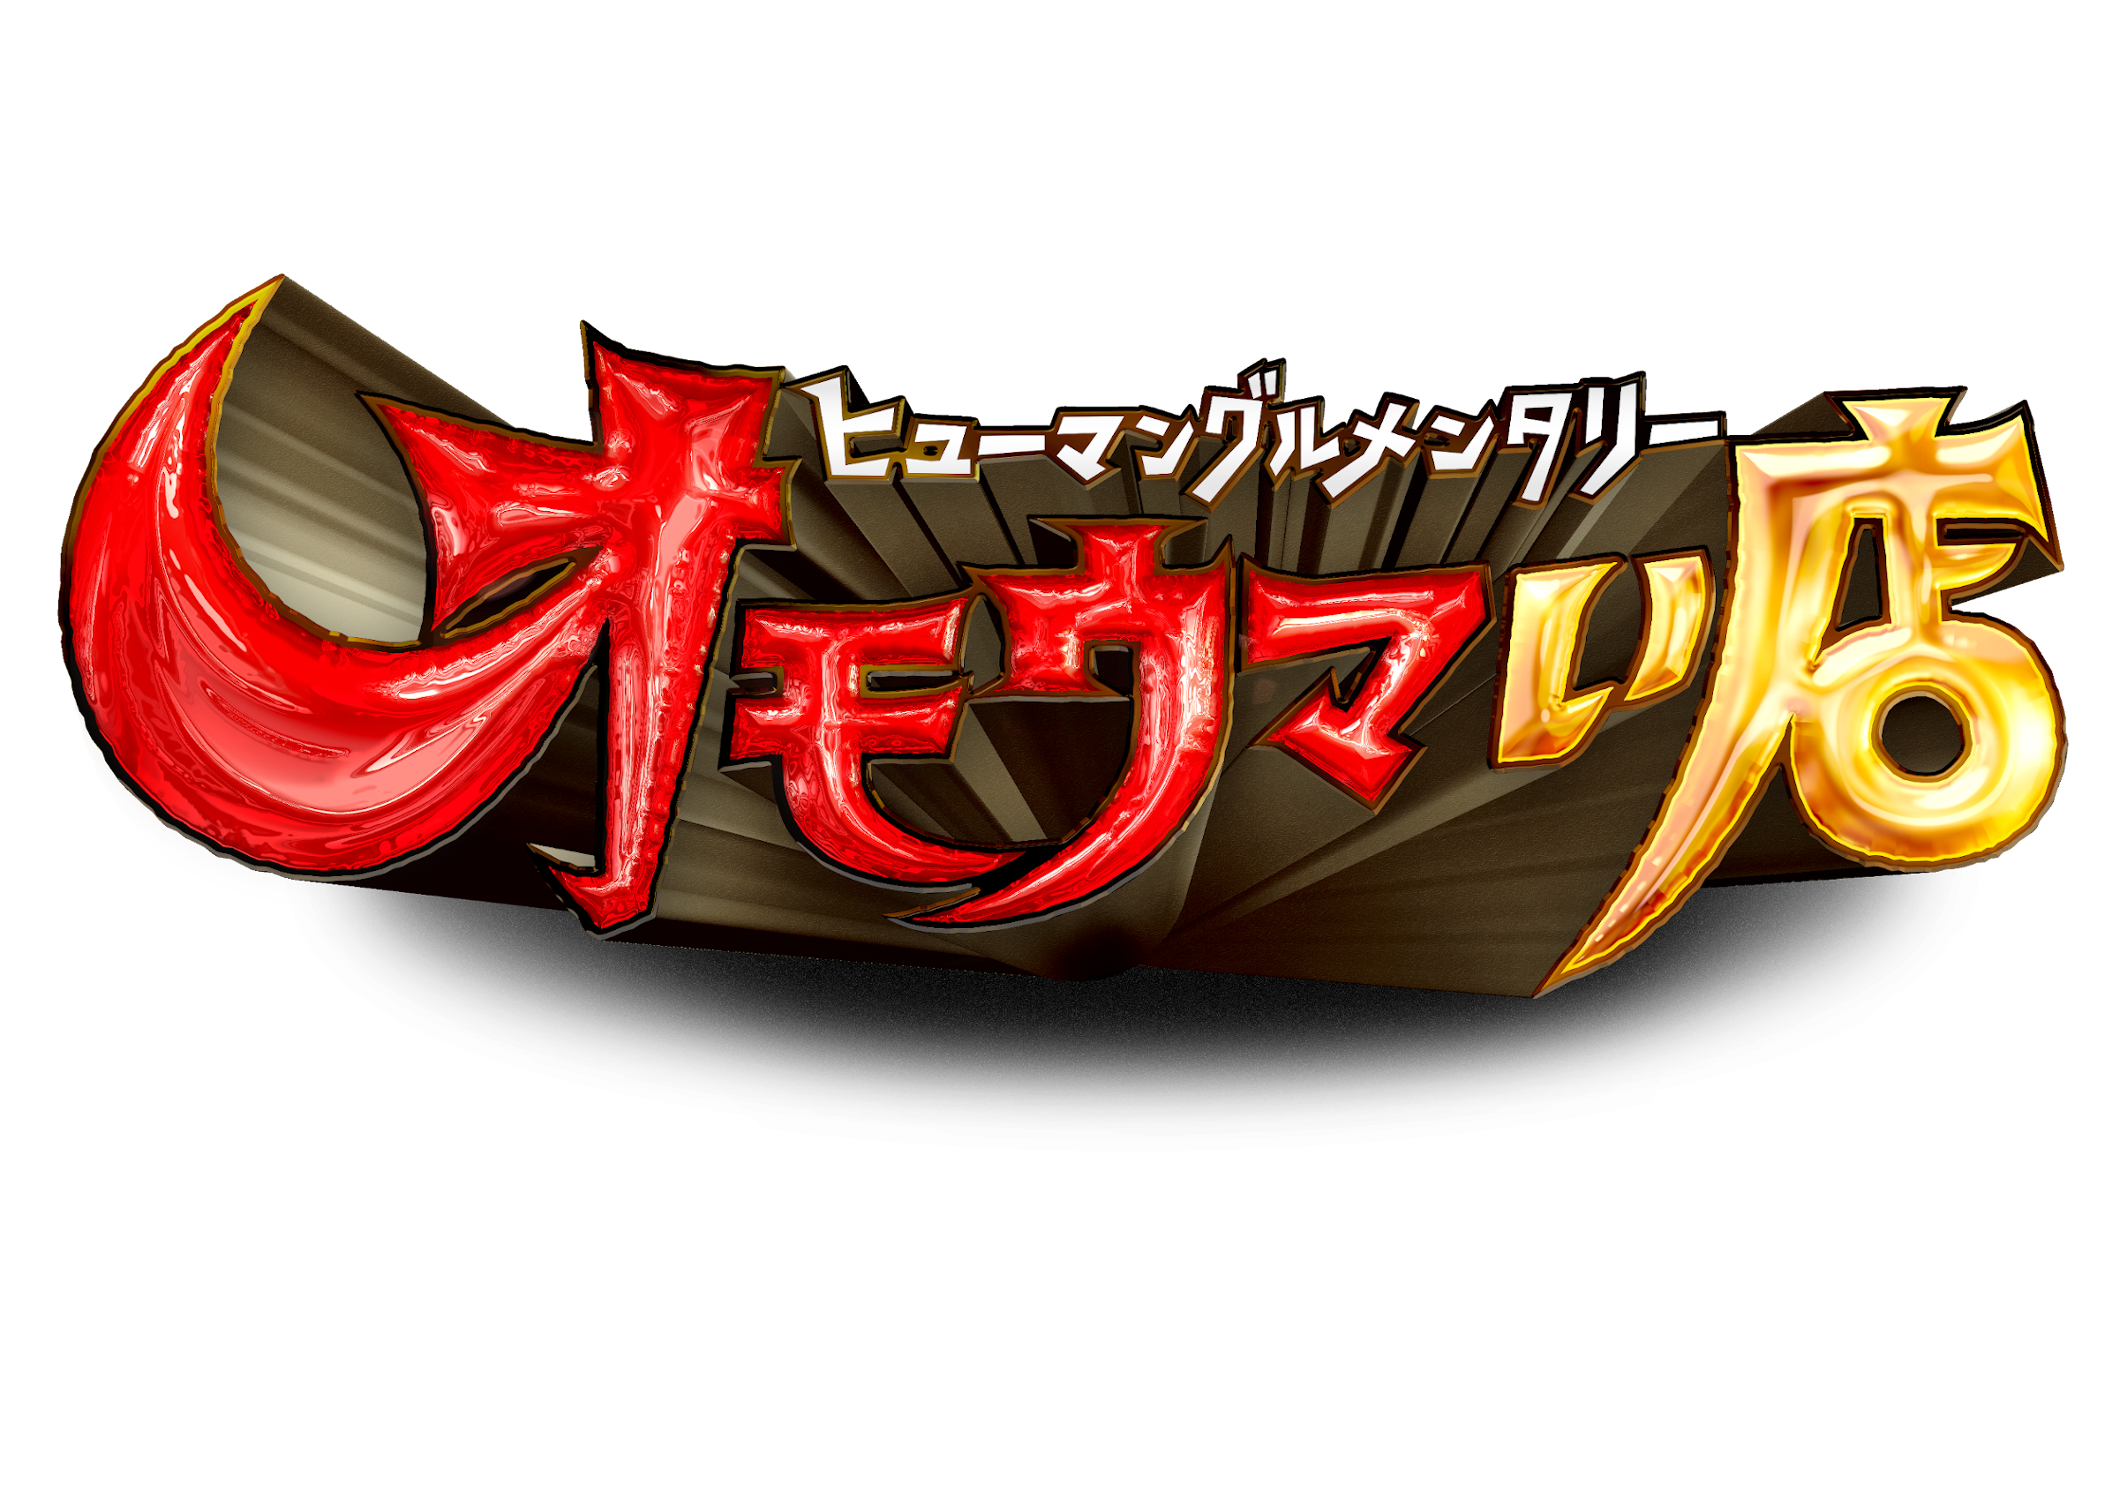 【MUSIC ON! TV（エムオン!）】
アニメ音楽フェス
「リスアニ！LIVE 2021」
3月・4月にエムオン!で放送決定！